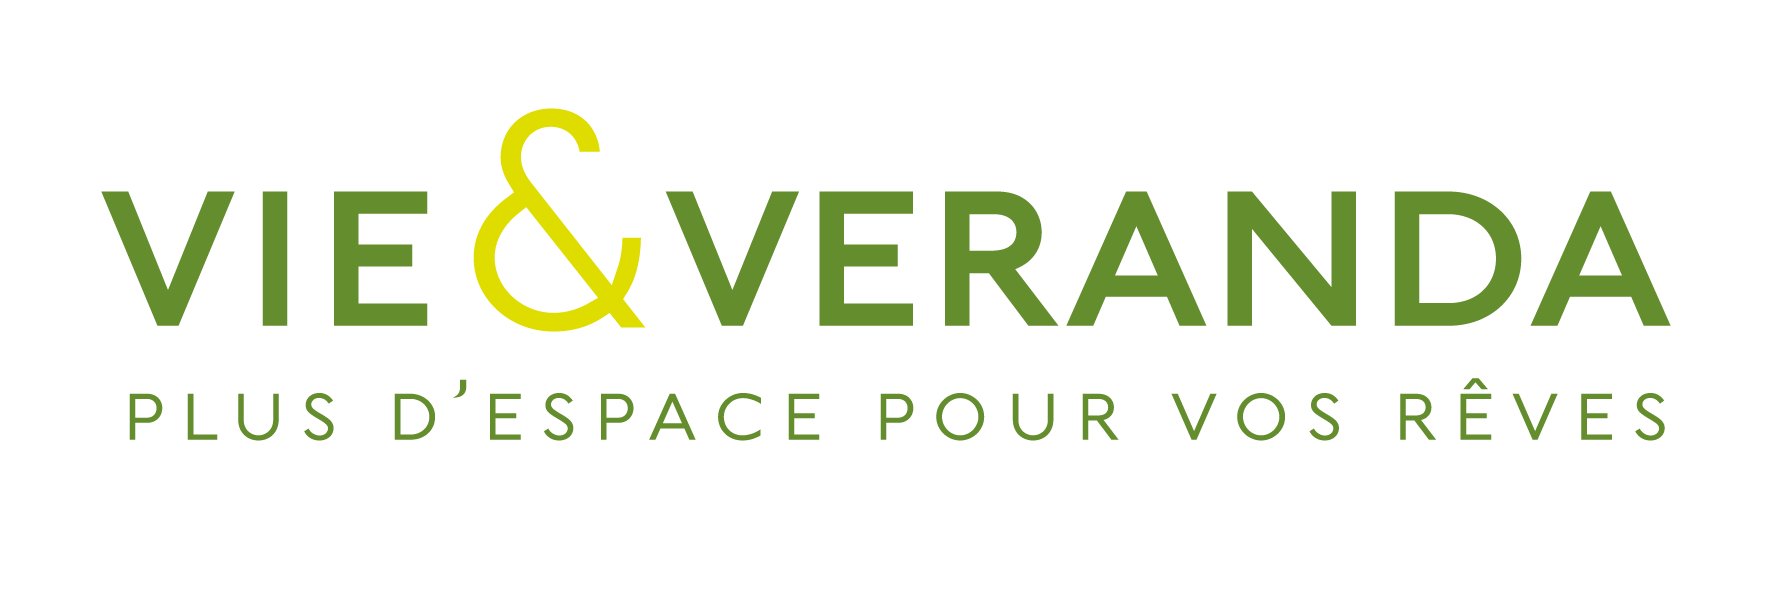 logo-VIE ET VÉRANDA